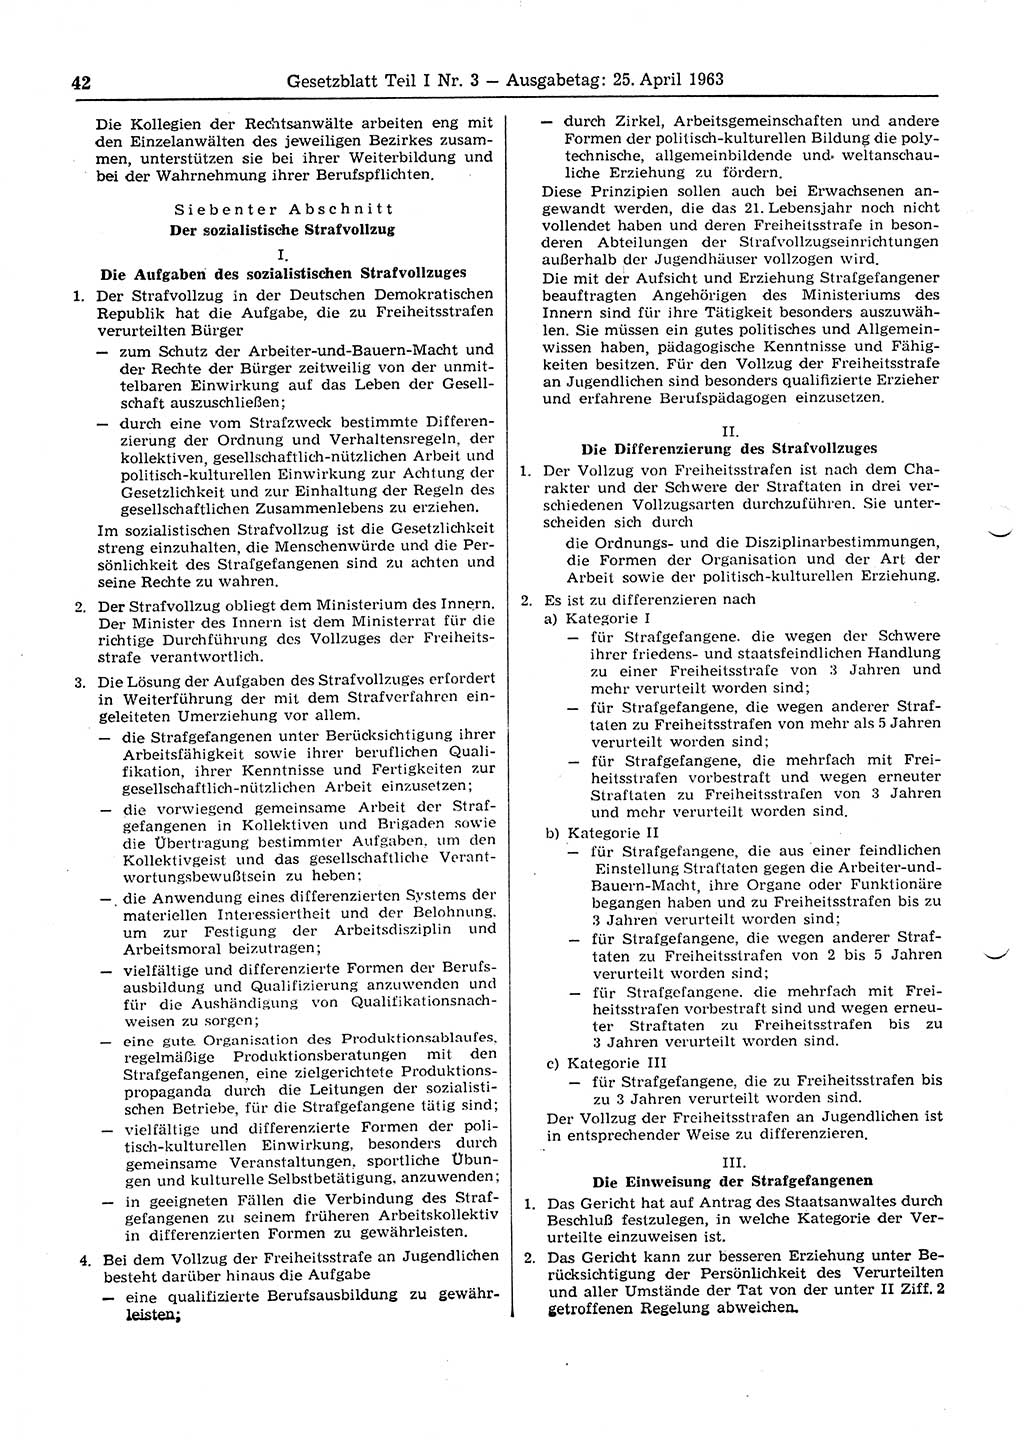 Gesetzblatt (GBl.) der Deutschen Demokratischen Republik (DDR) Teil Ⅰ 1963, Seite 42 (GBl. DDR Ⅰ 1963, S. 42)